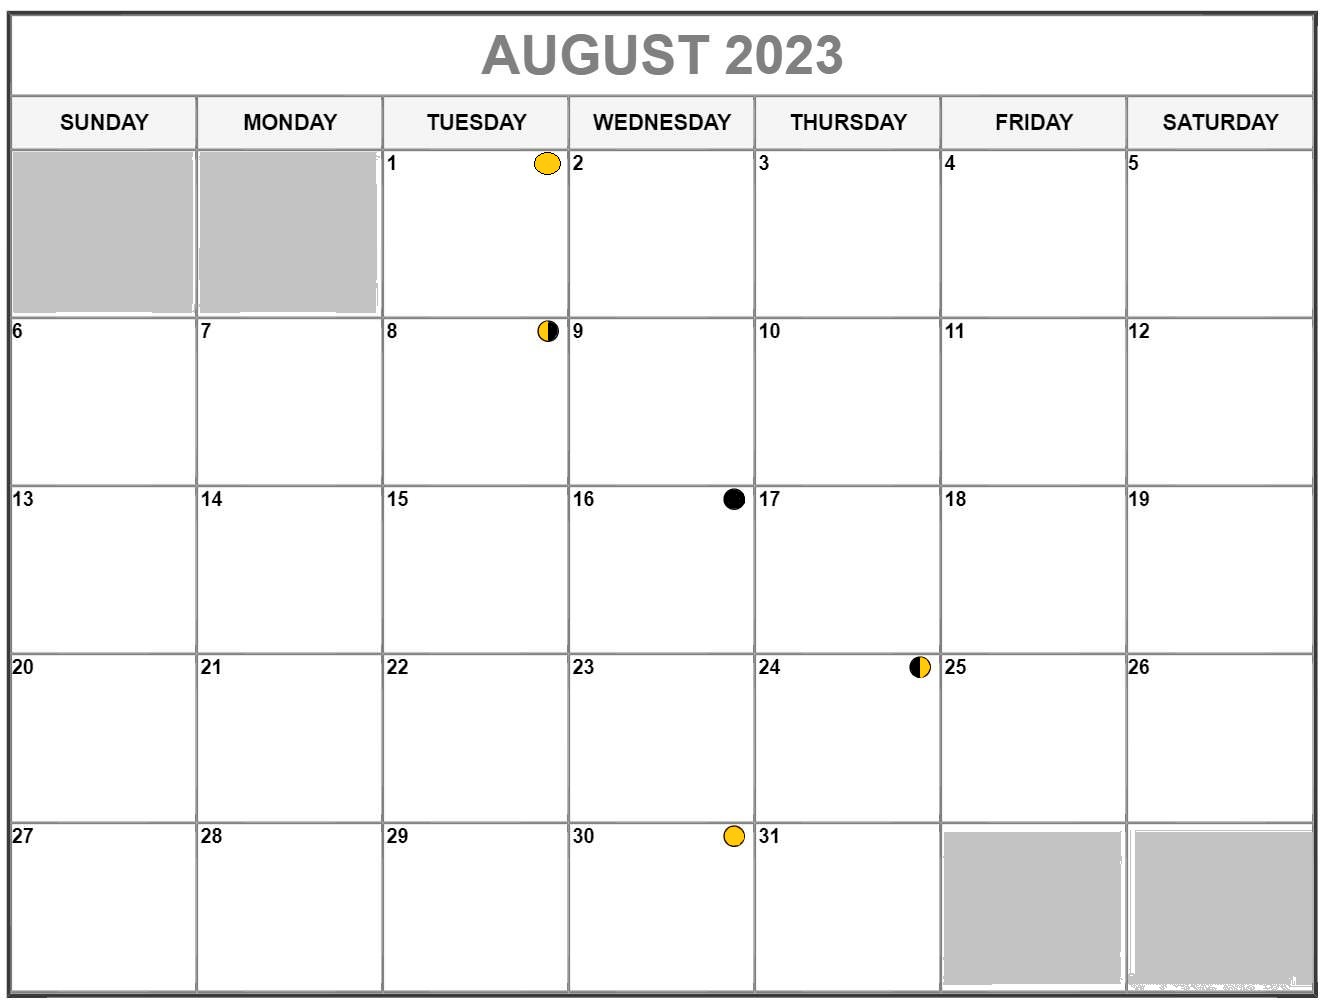 August 2023 Lunar Calendar Template